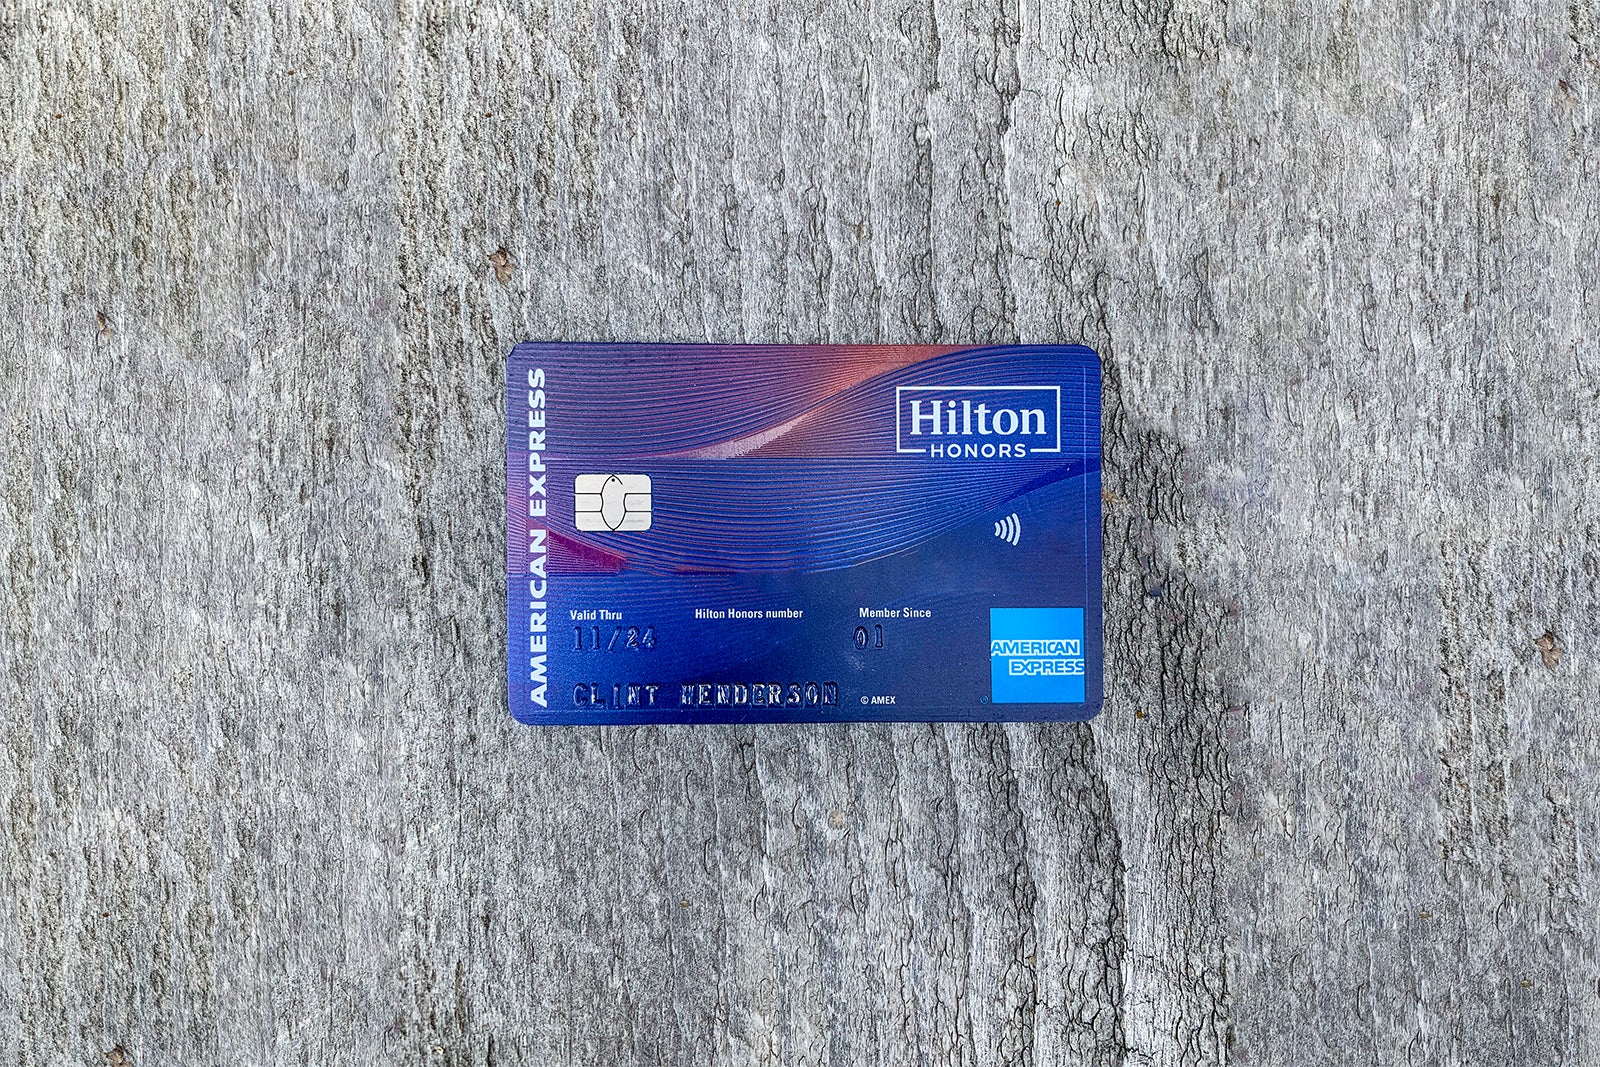 希尔顿荣誉美国运通Aspire卡。（照片由Clint Henderson / Points Guy）